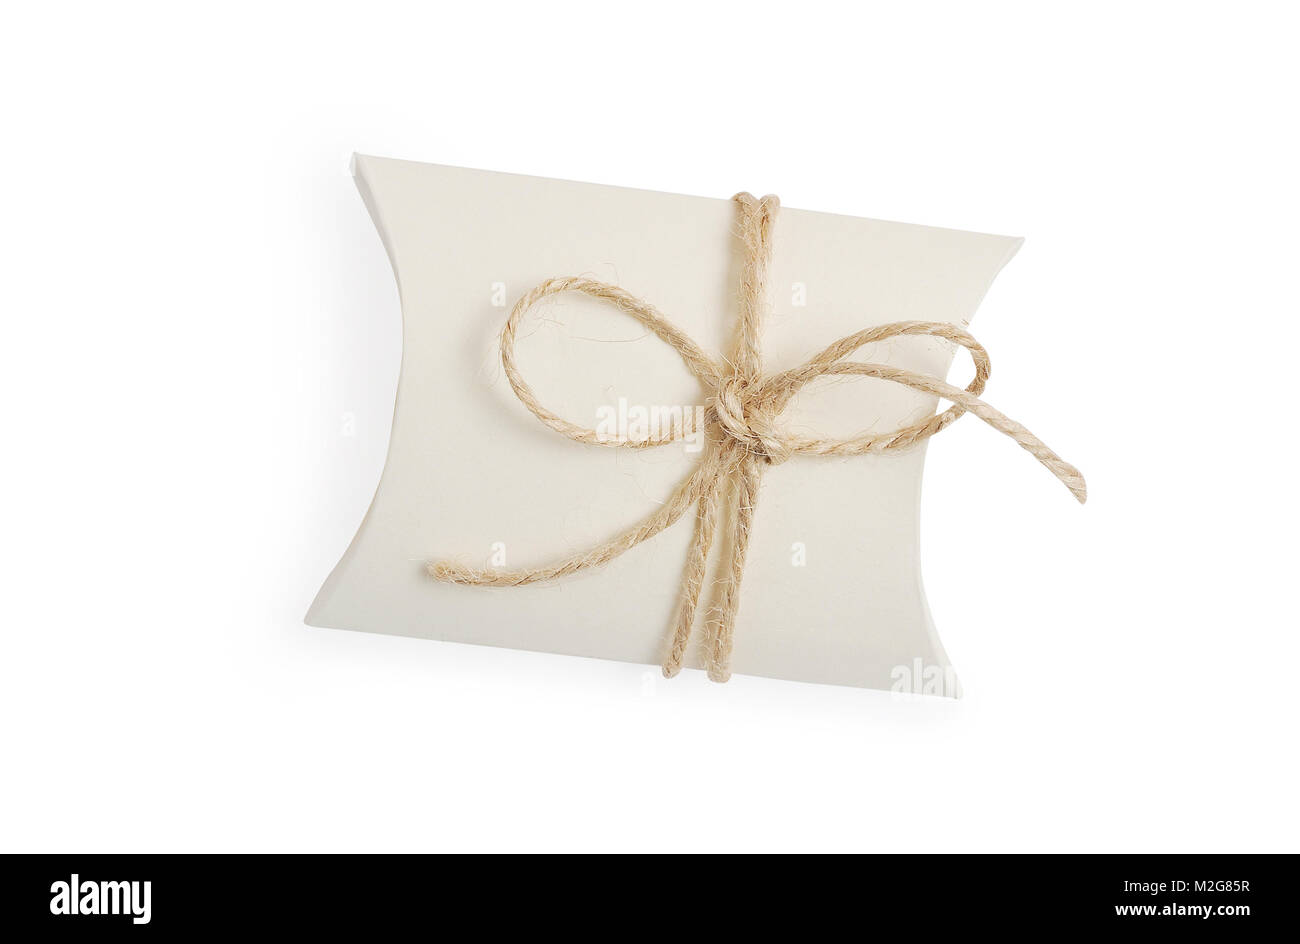 Bonbonniere vintage boîte-cadeau avec corde ribbon bow, masque de découpe isolé sur fond blanc, vue du dessus l'illustration pour la Saint-Valentin ou mariage Banque D'Images